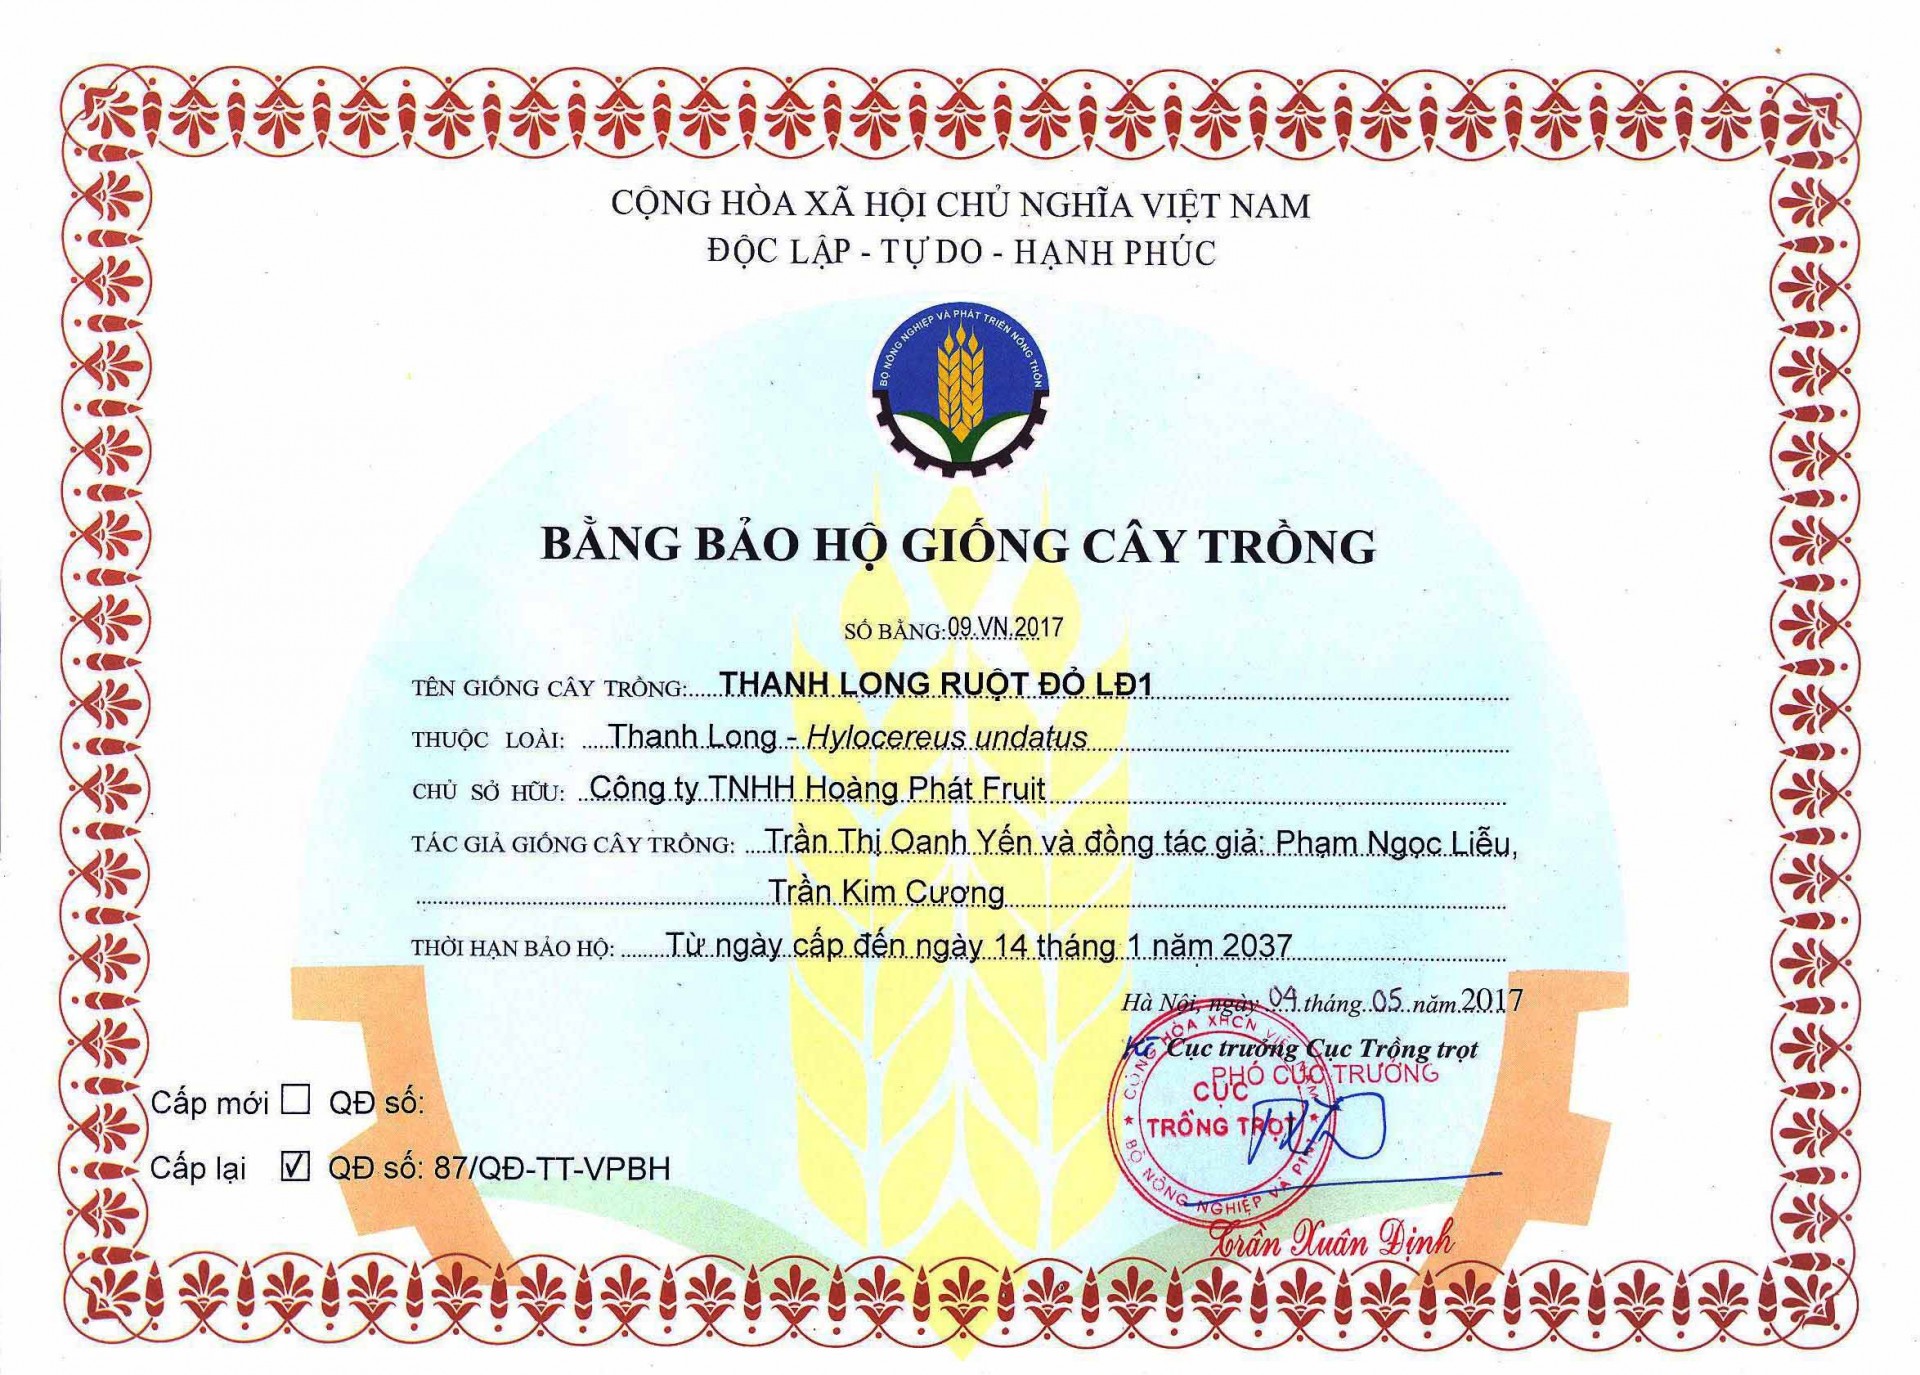 Thủ tướng Chính phủ đề nghị Bộ NNPTNT kiểm tra thông tin Dân Việt nêu  - Ảnh 3.